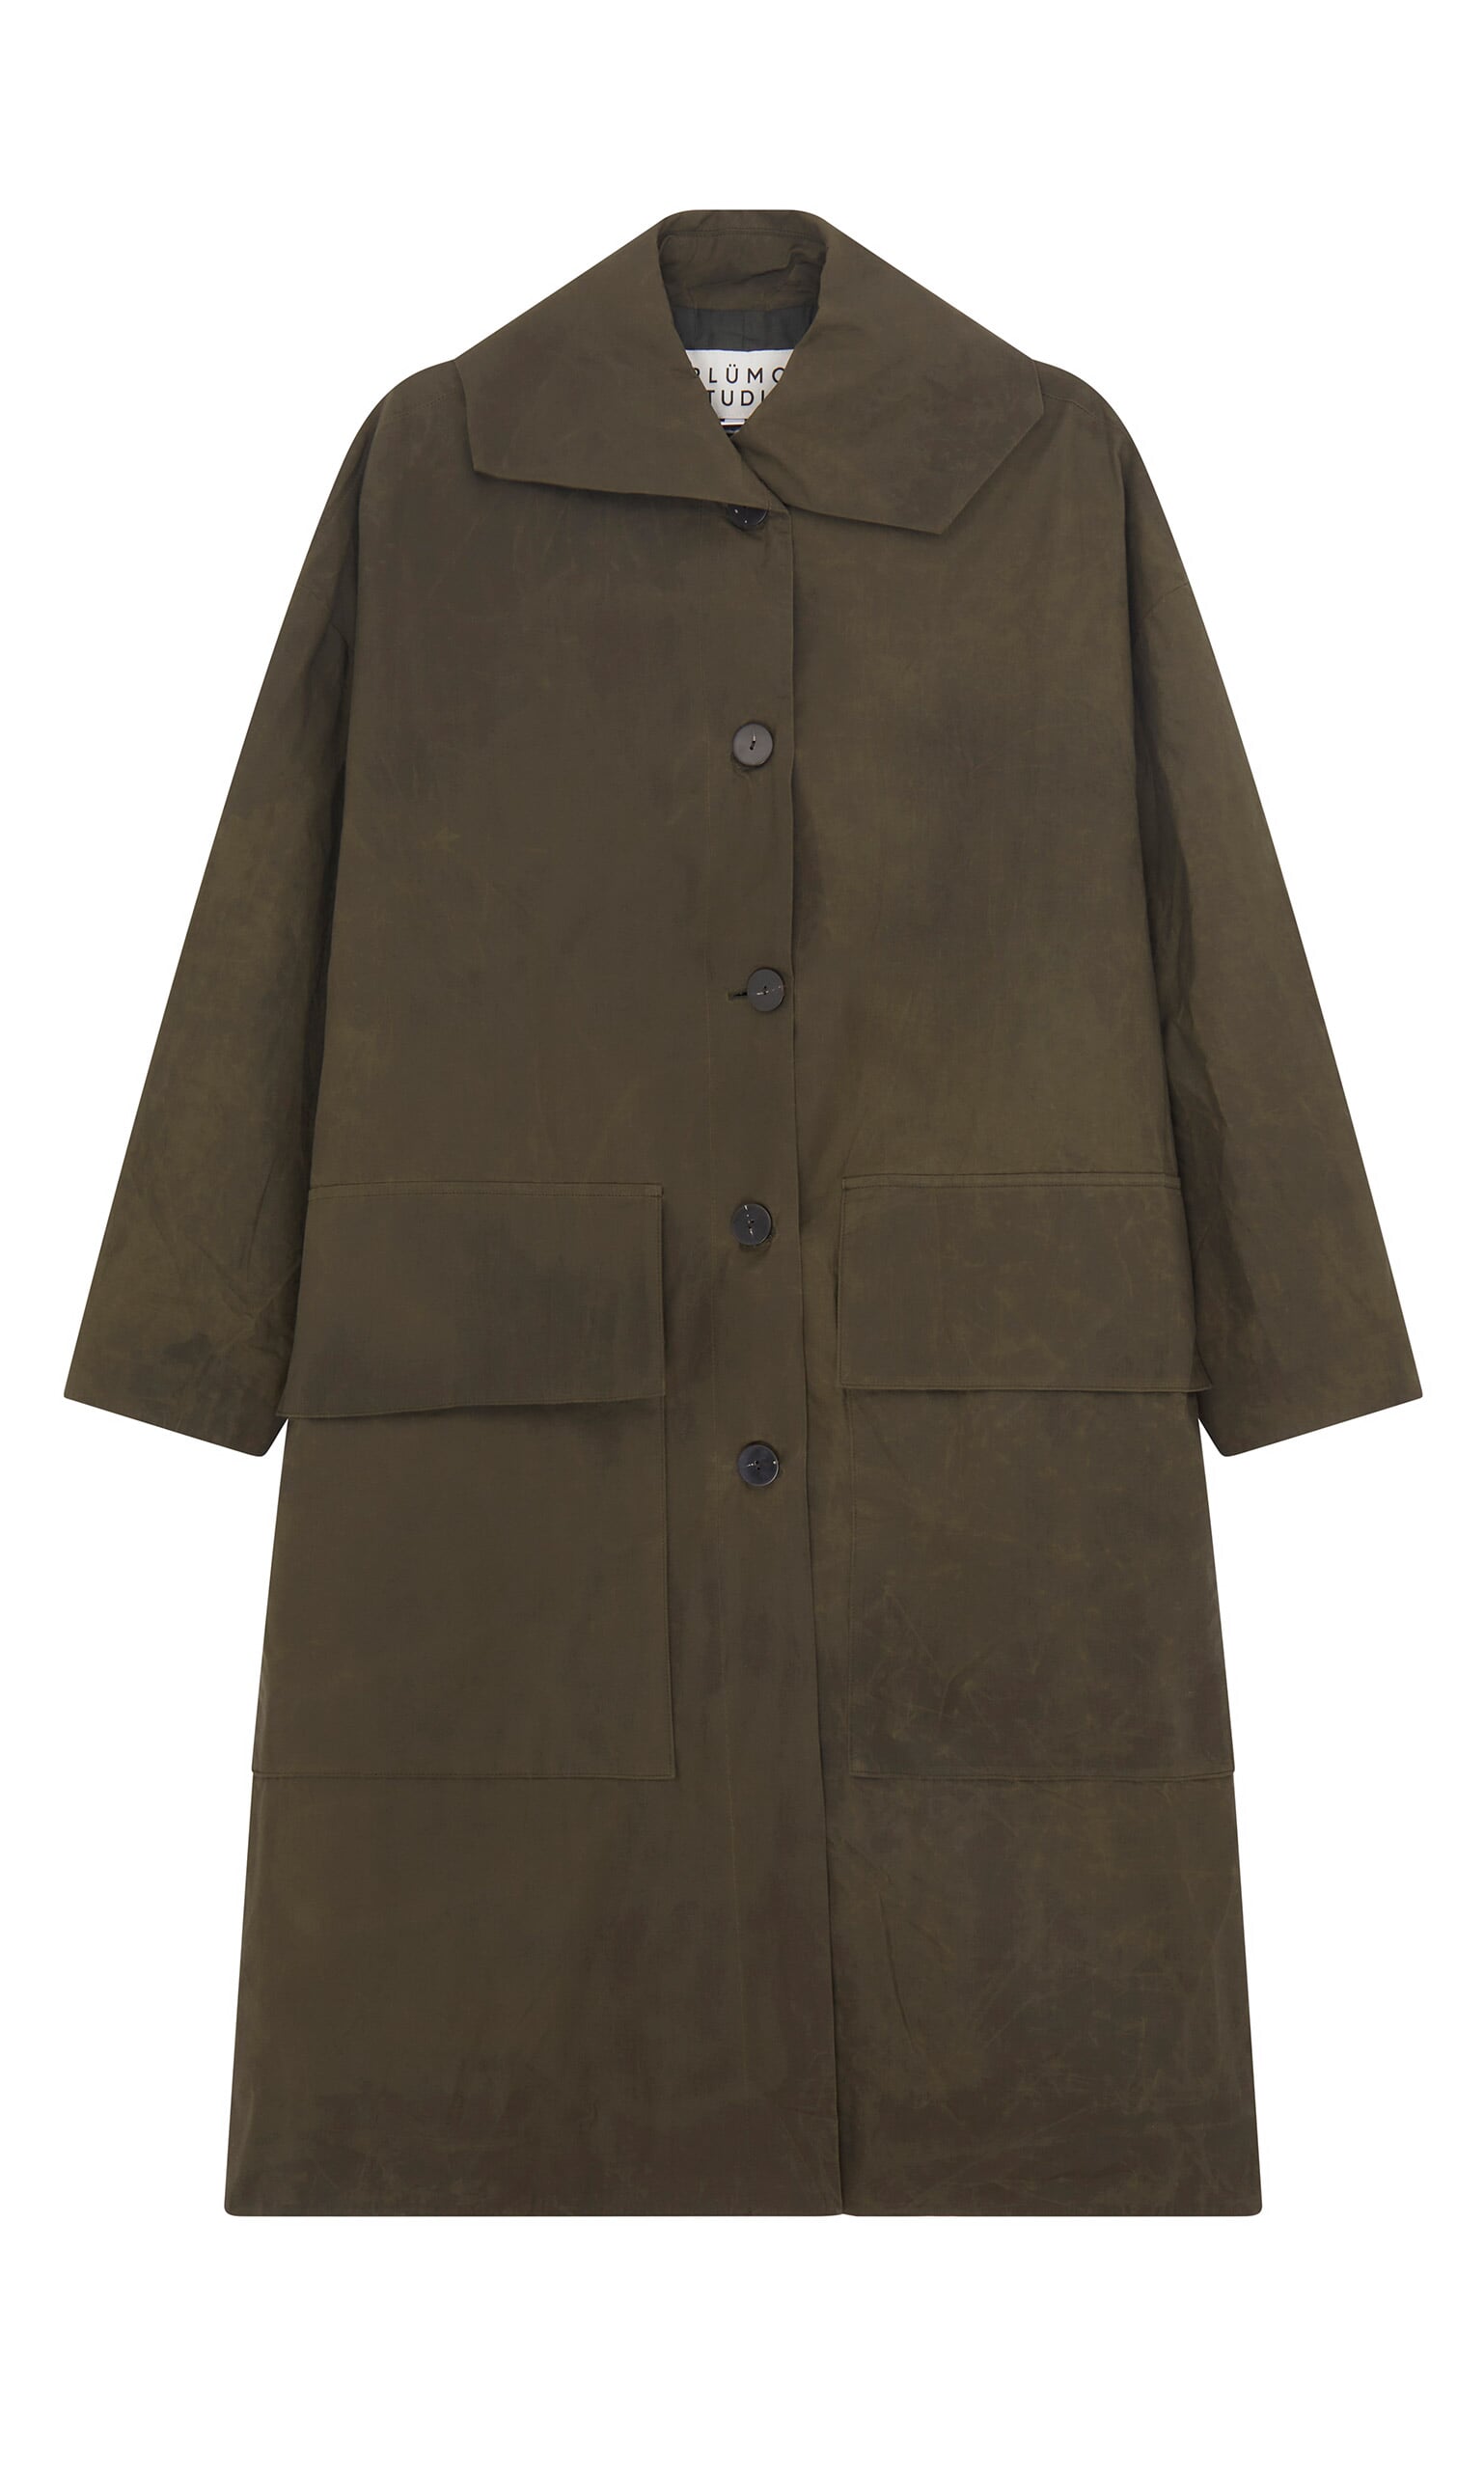 Yorkshire coat - Plümo Ltd